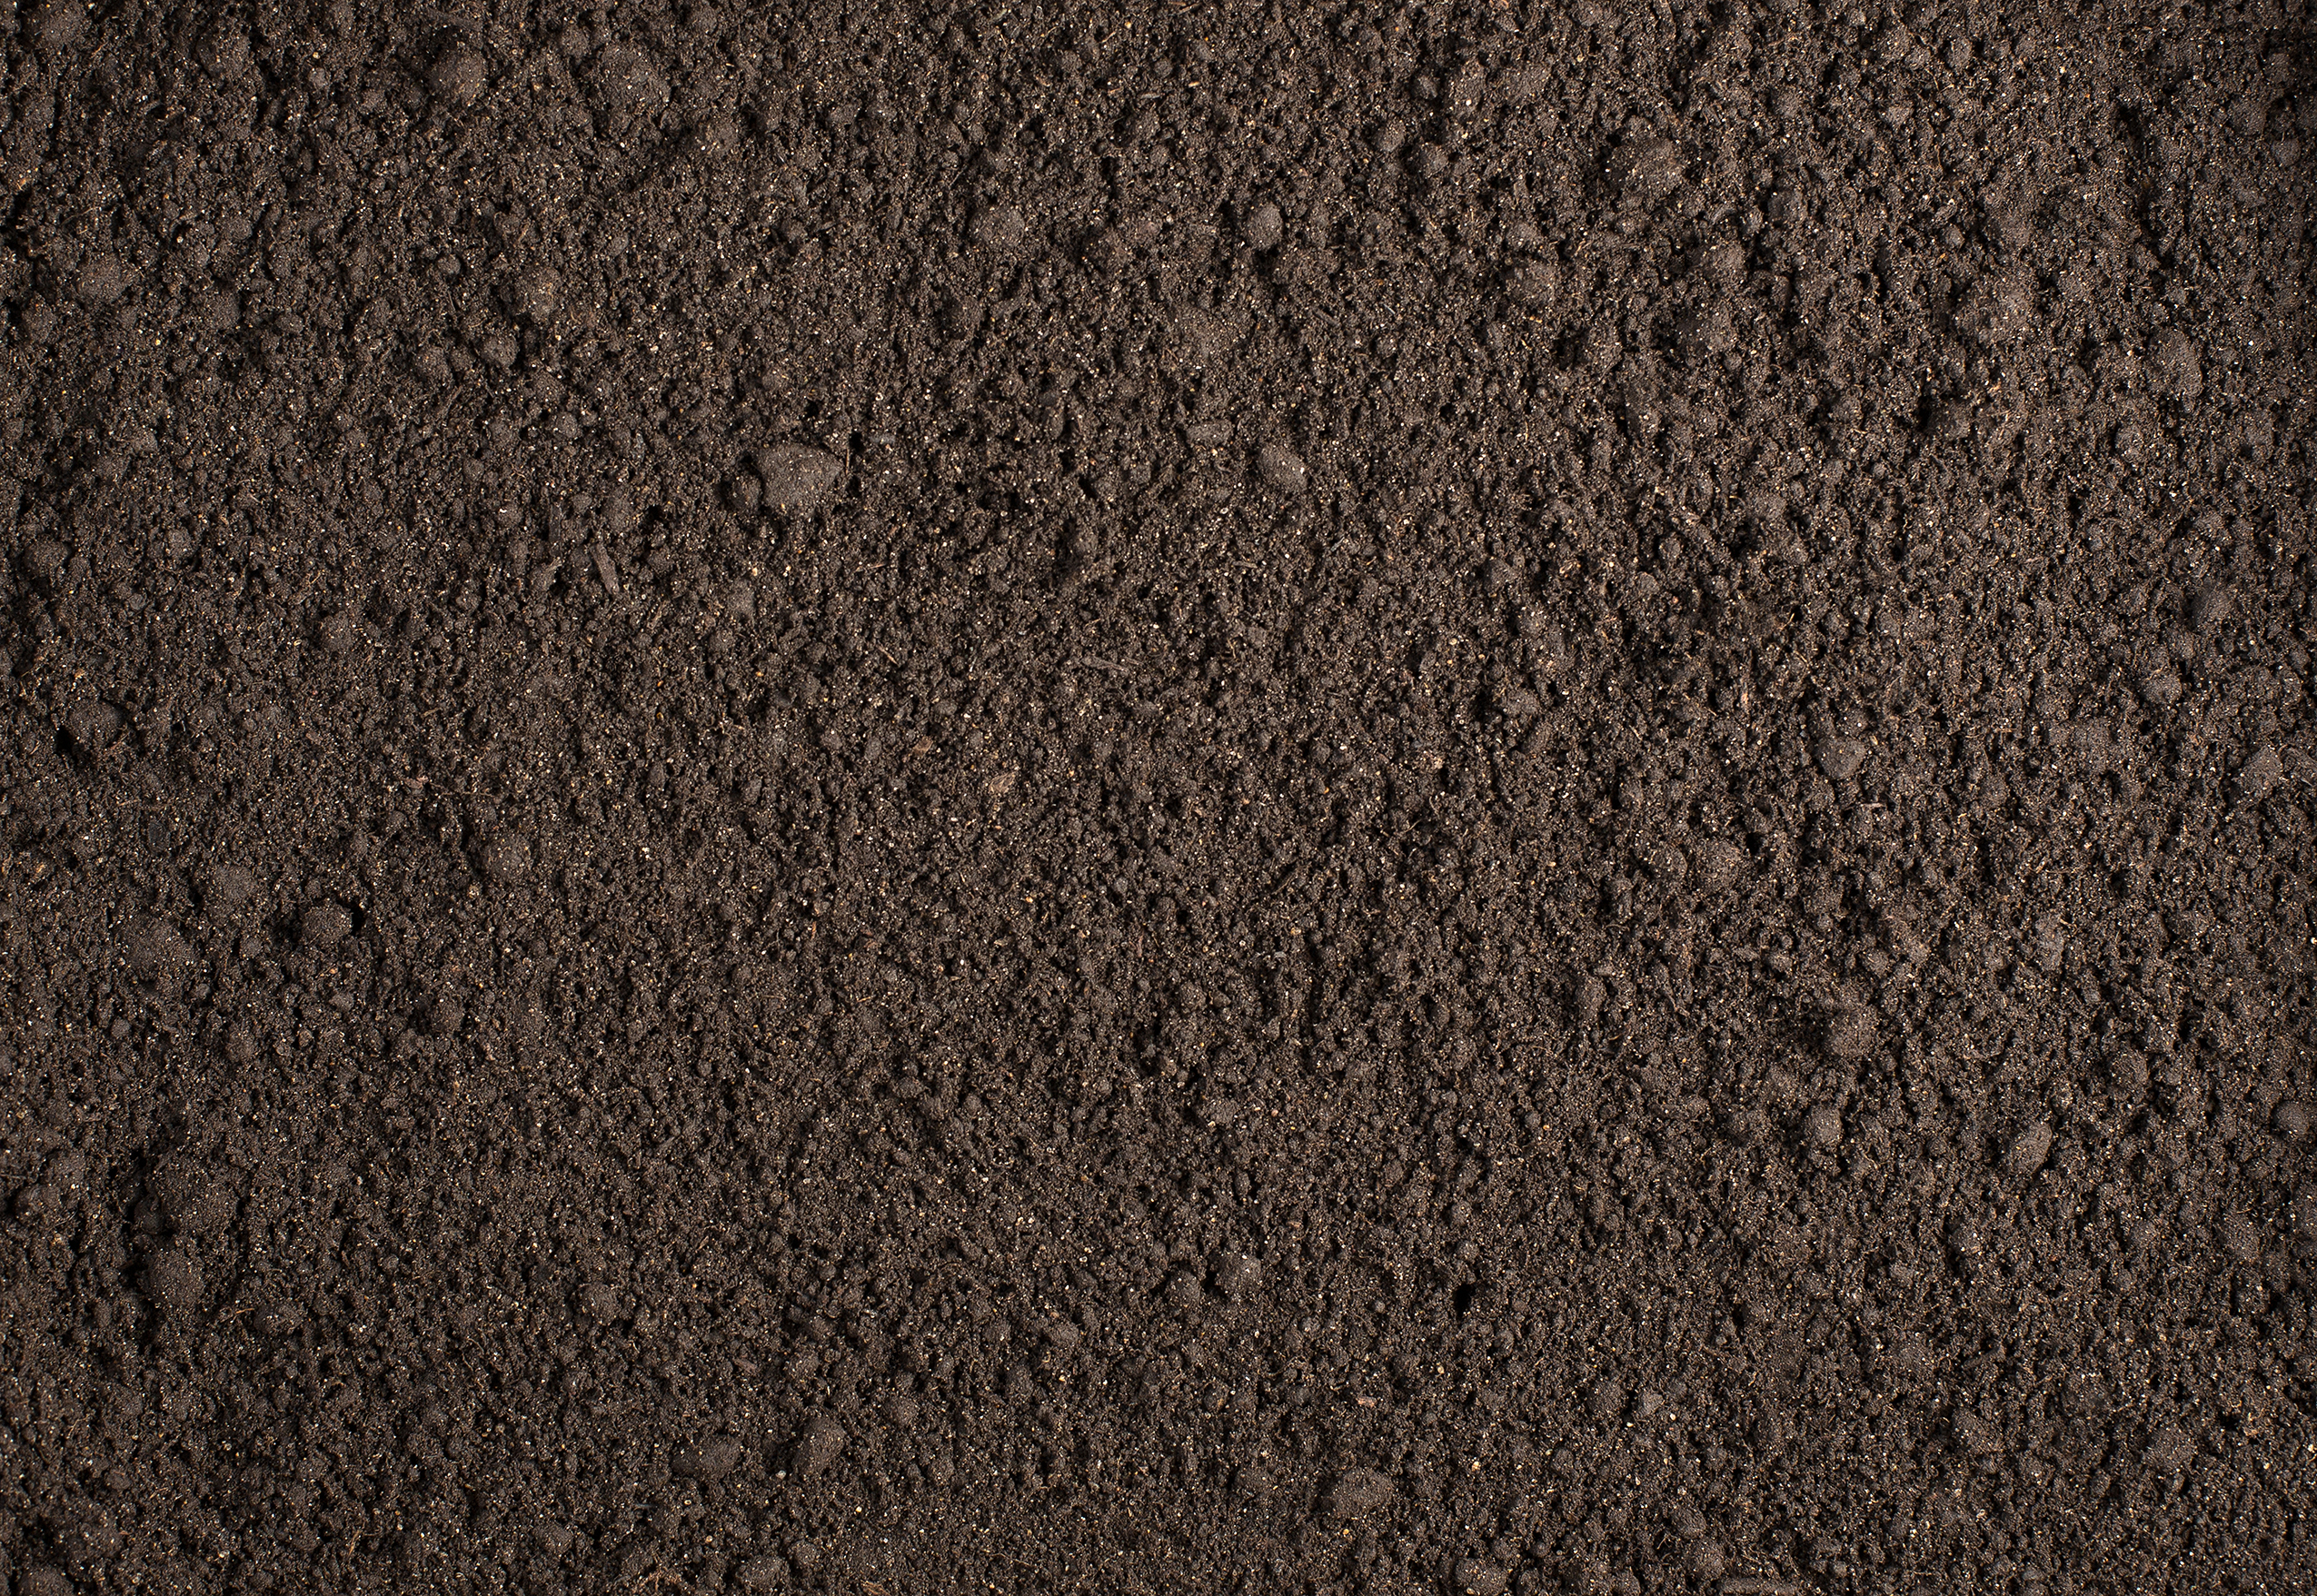 Dirt-Texture-05 - Roc-Drill